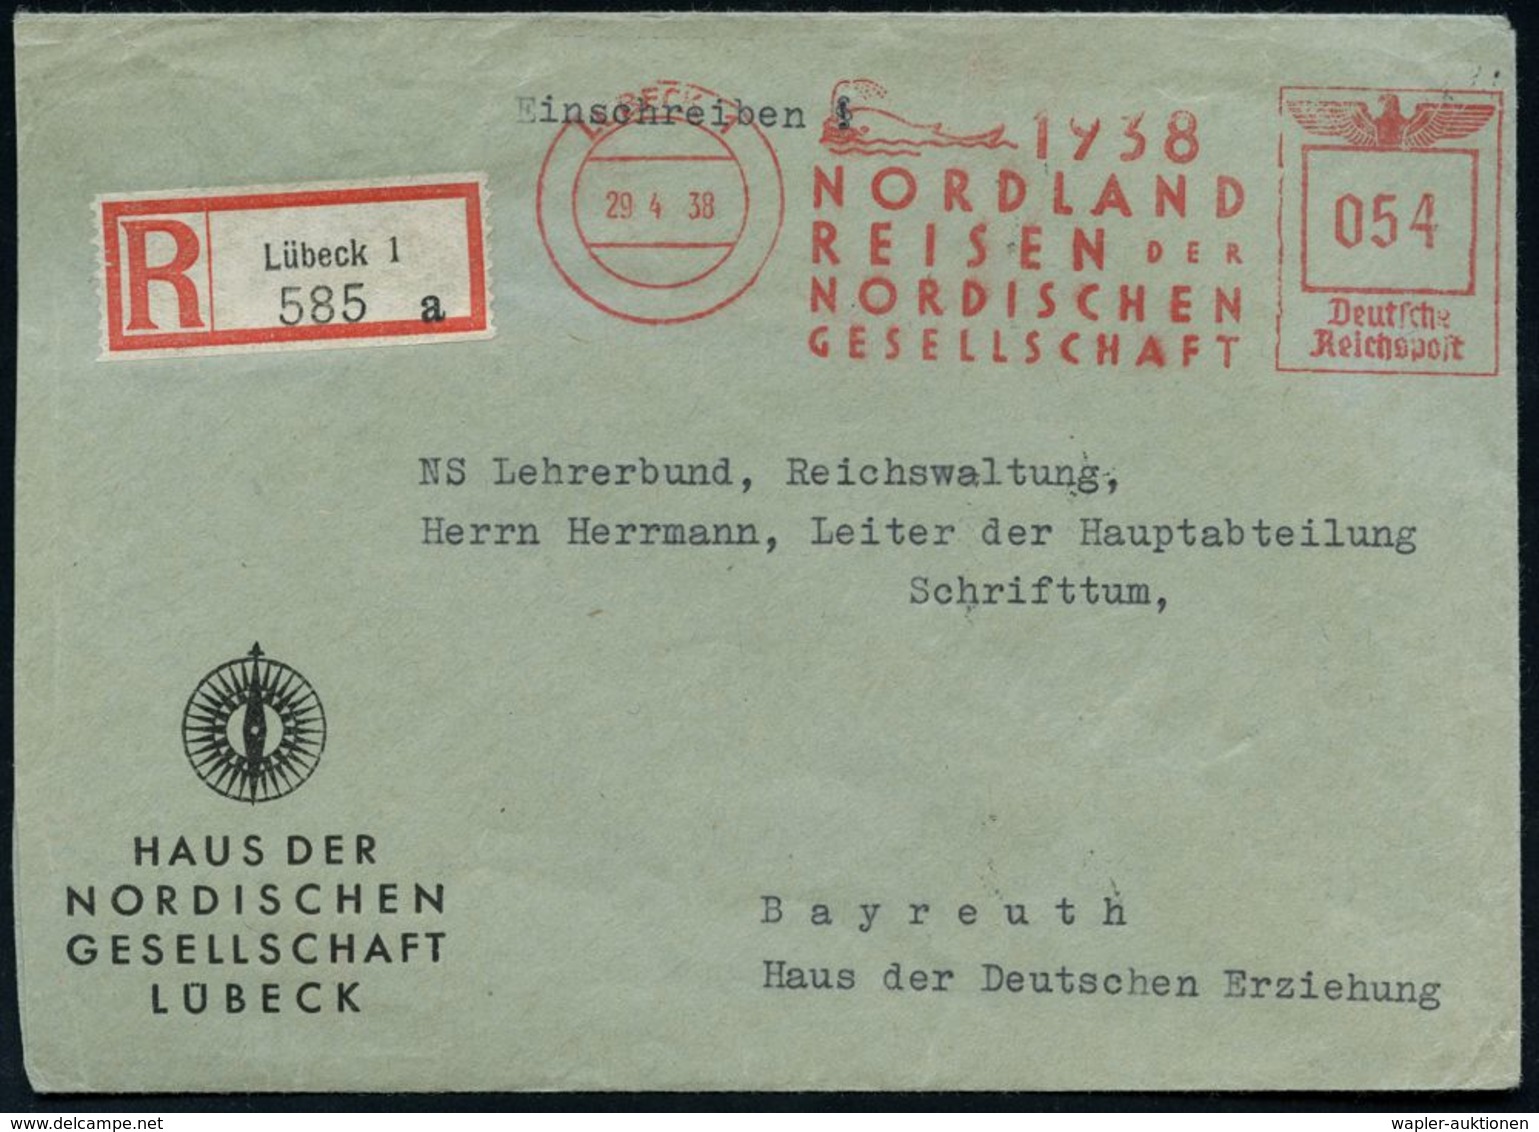 LÜBECK 1/ 1937/ NORDLAND/ REISEN DER/ NORDISCHEN/ GESELLSCHAFT 1938 (29.4.) Sehr Seltener AFS 054 Pf. = Wal (bläst Wasse - Arctische Expedities